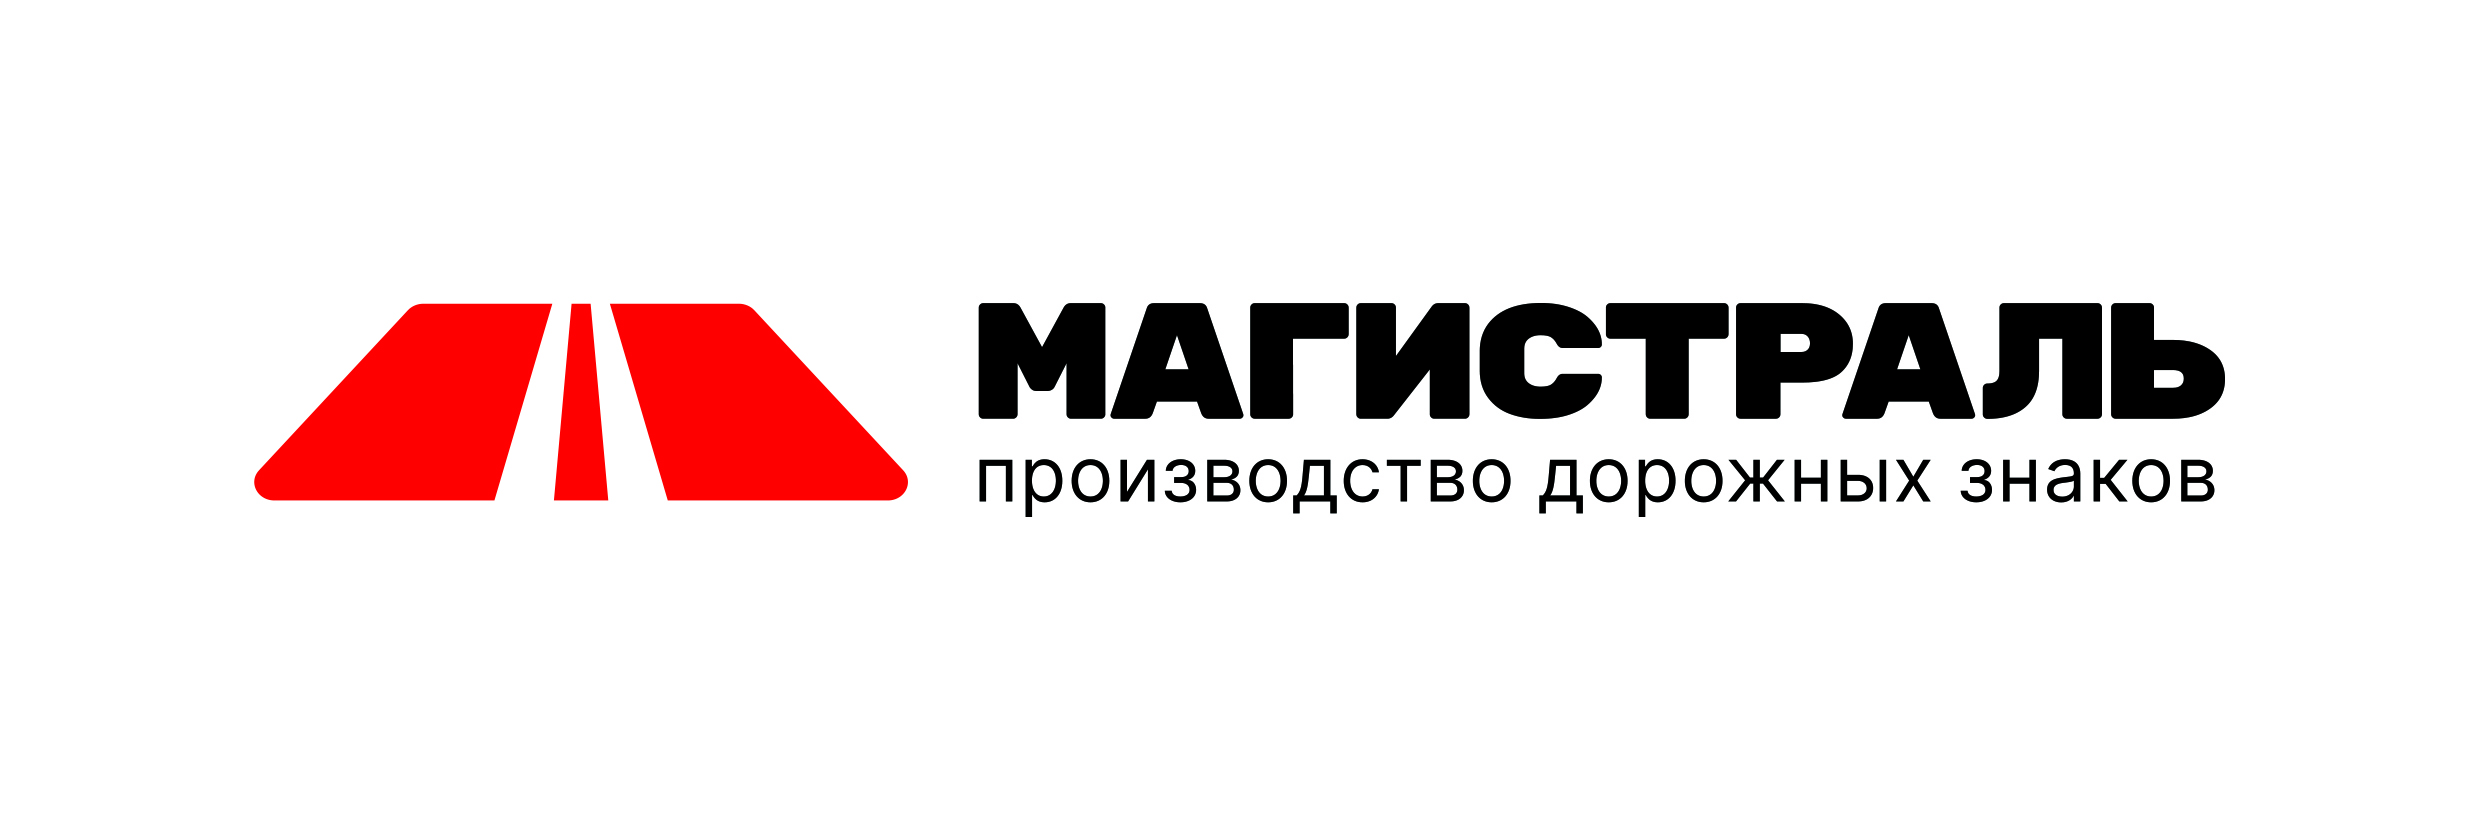 Магистраль - производство, продажа и установка дорожных знаков в Москве и области